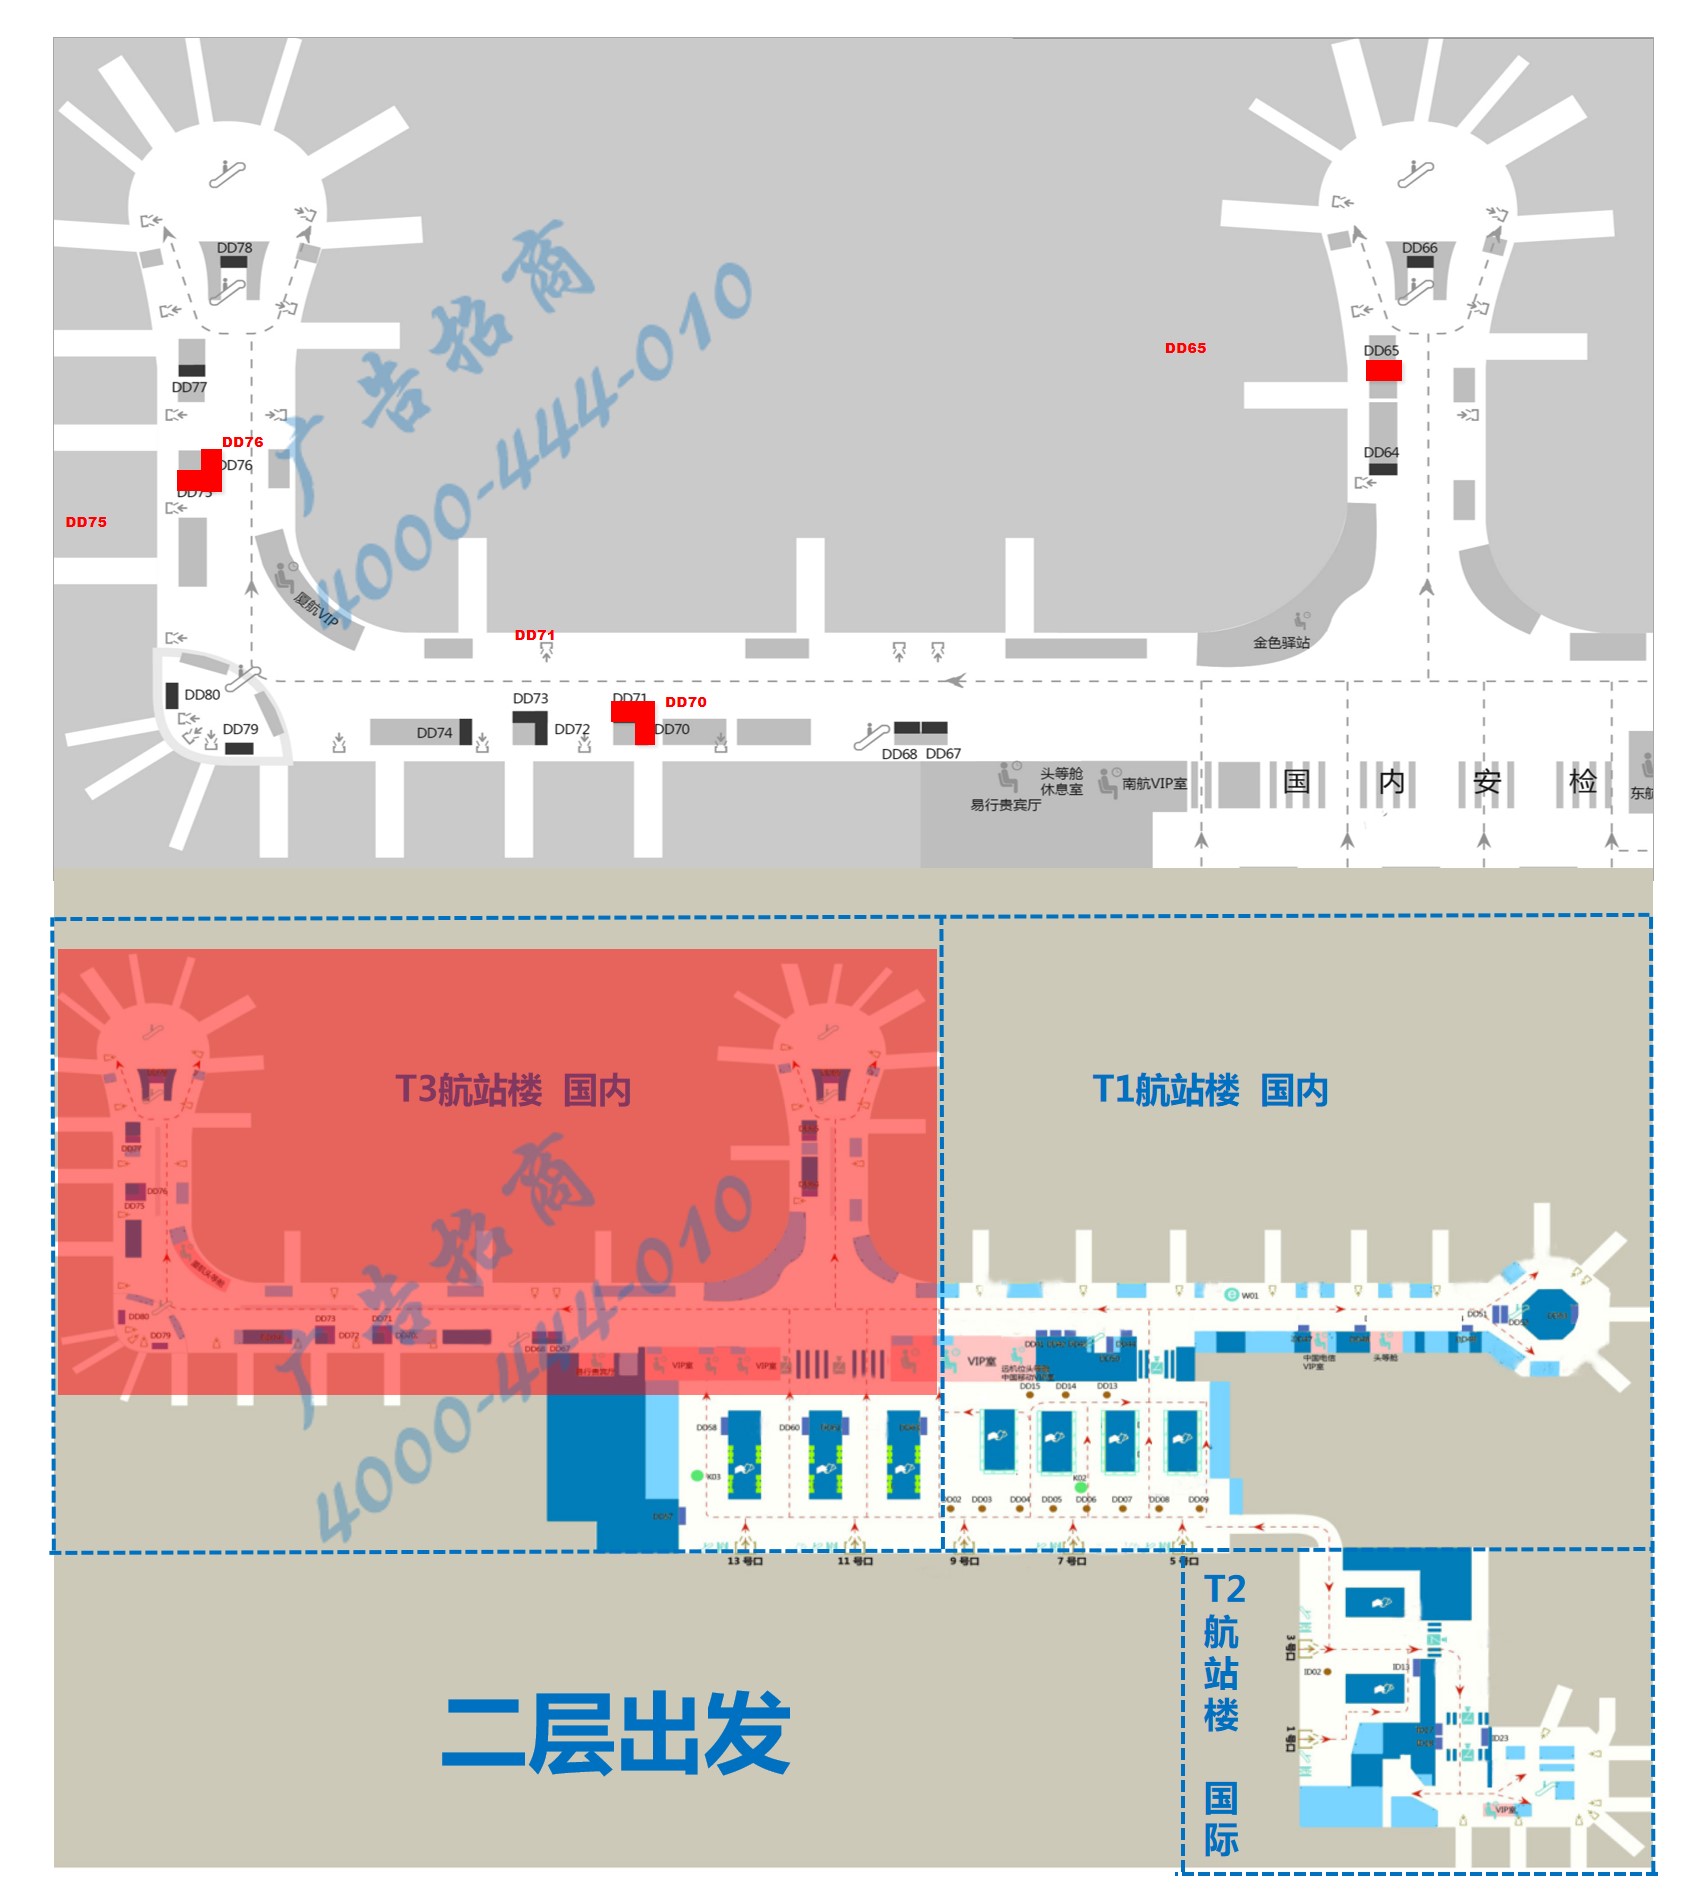 杭州萧山机场广告-T3登机口全覆盖灯箱DD65等位置图